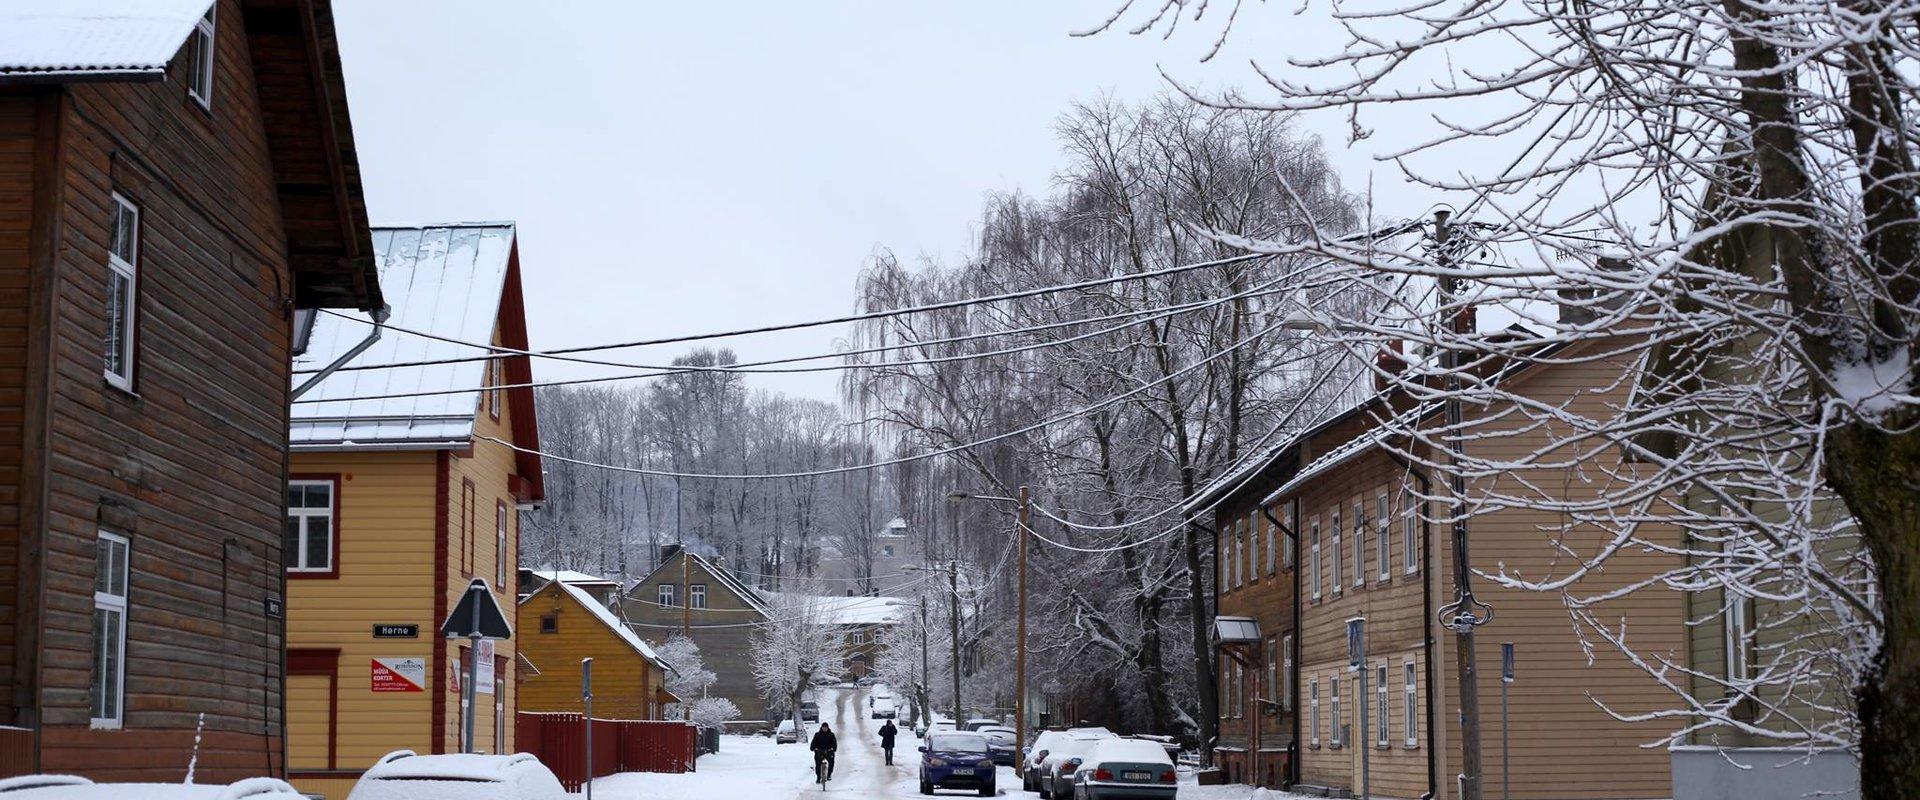 Supilinn – ympäristöltään arvokasta puukaupunkia lumisena talvena